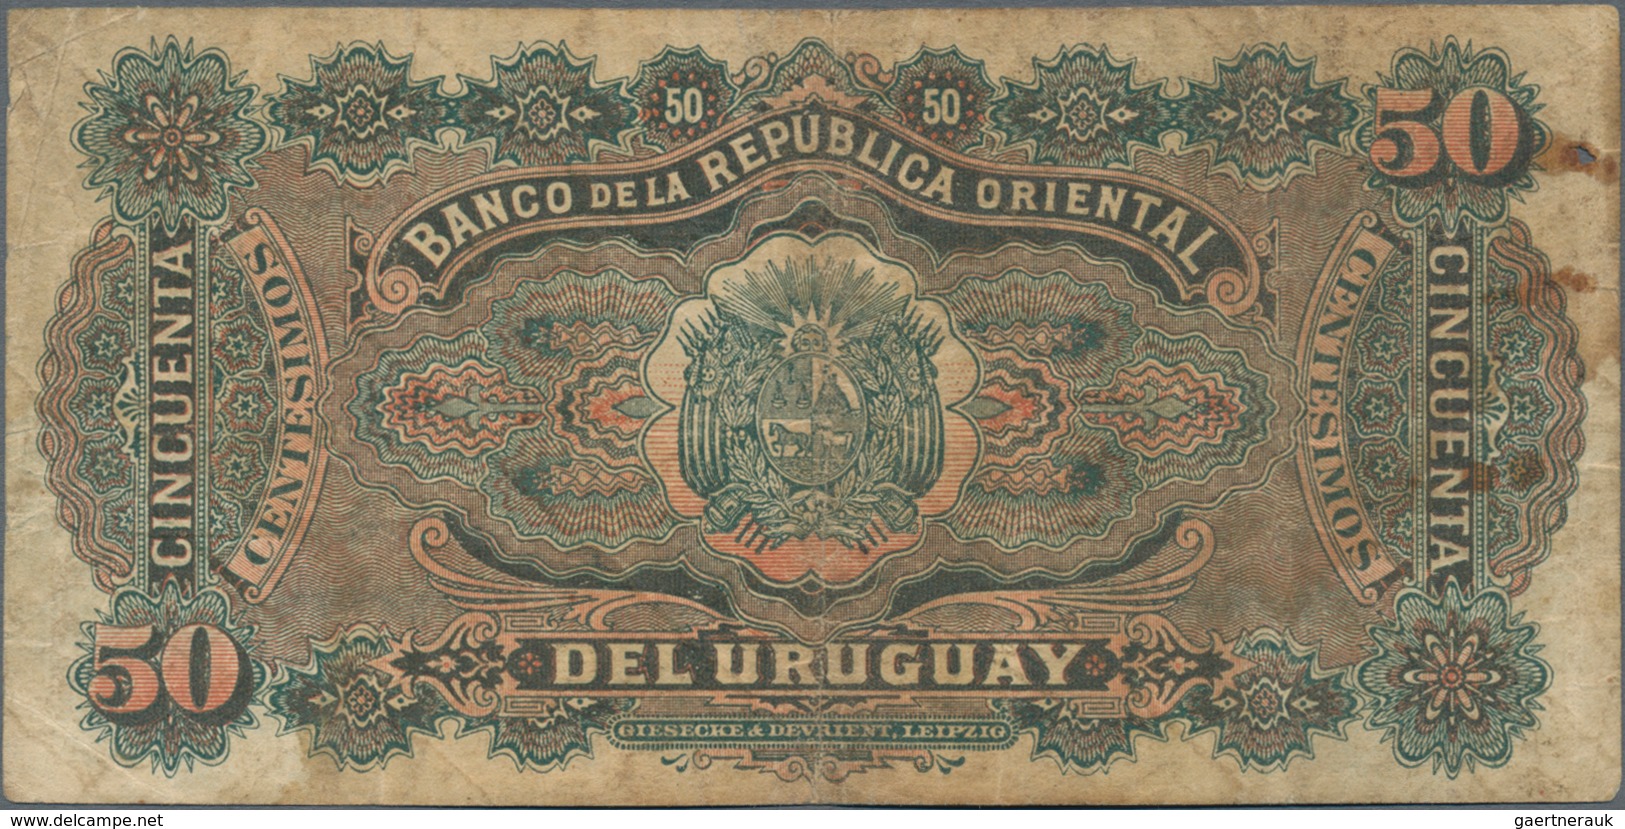 Uruguay: El Banco De La Republica Oriental Del Uruguay 50 Centesimos 1896, P.2 In About F Condition. - Uruguay